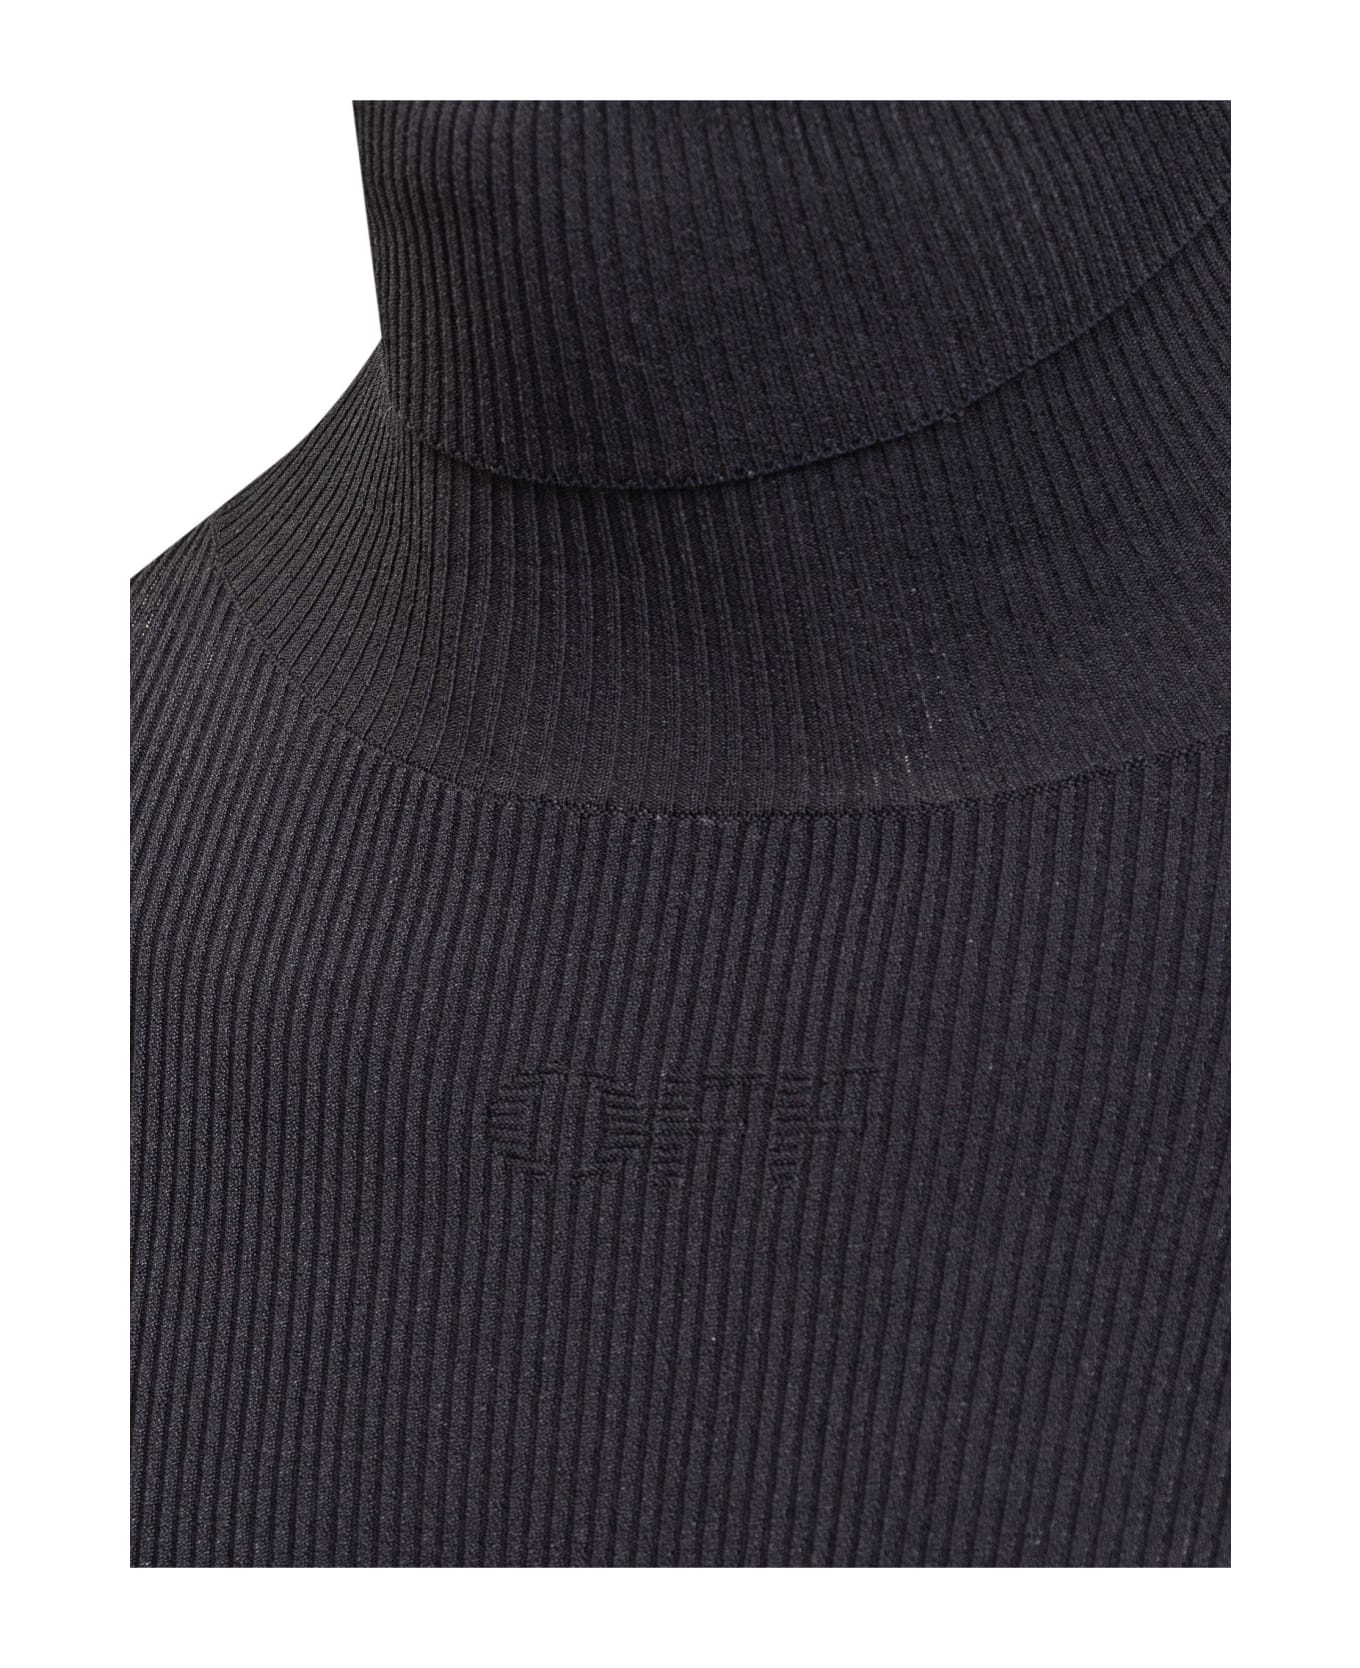 Off-White Turtleneck Sweater - SIERRA LEONE DARK ニットウェア